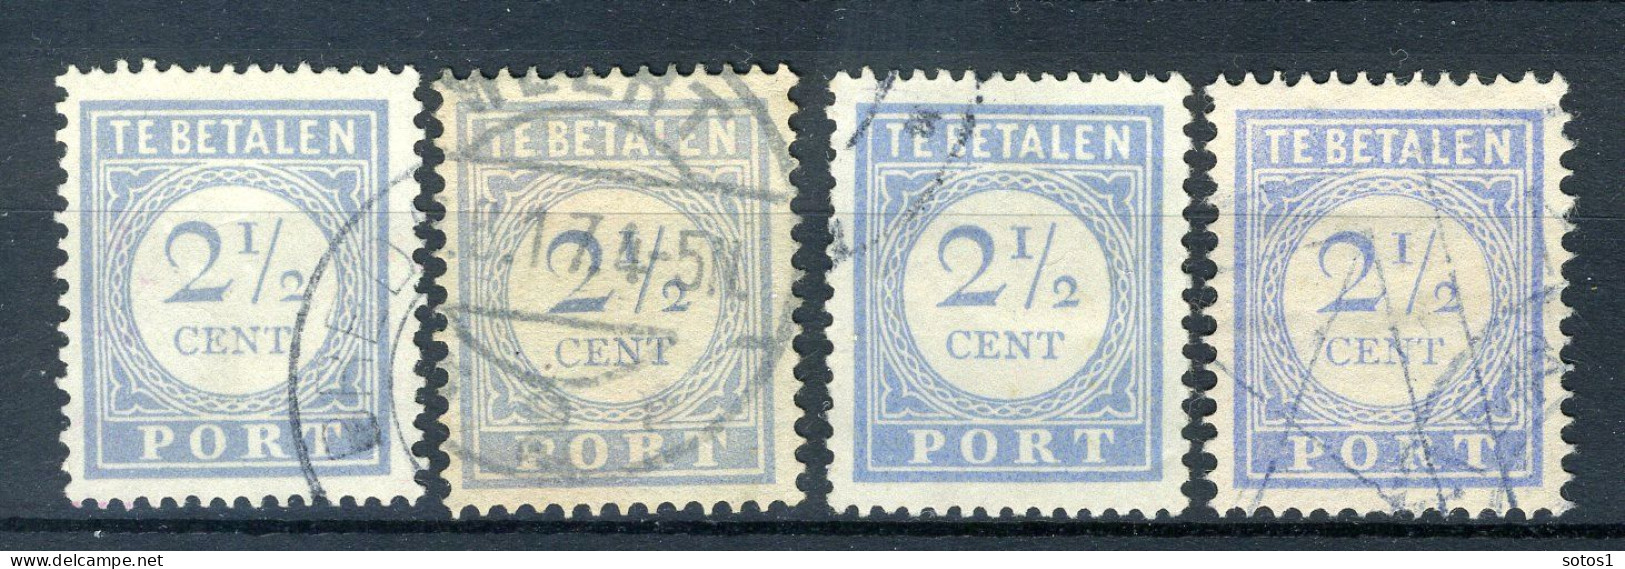 NEDERLAND P47 Gestempeld 1912-1920 - Cijfer En Waarde In Blauw - Postage Due